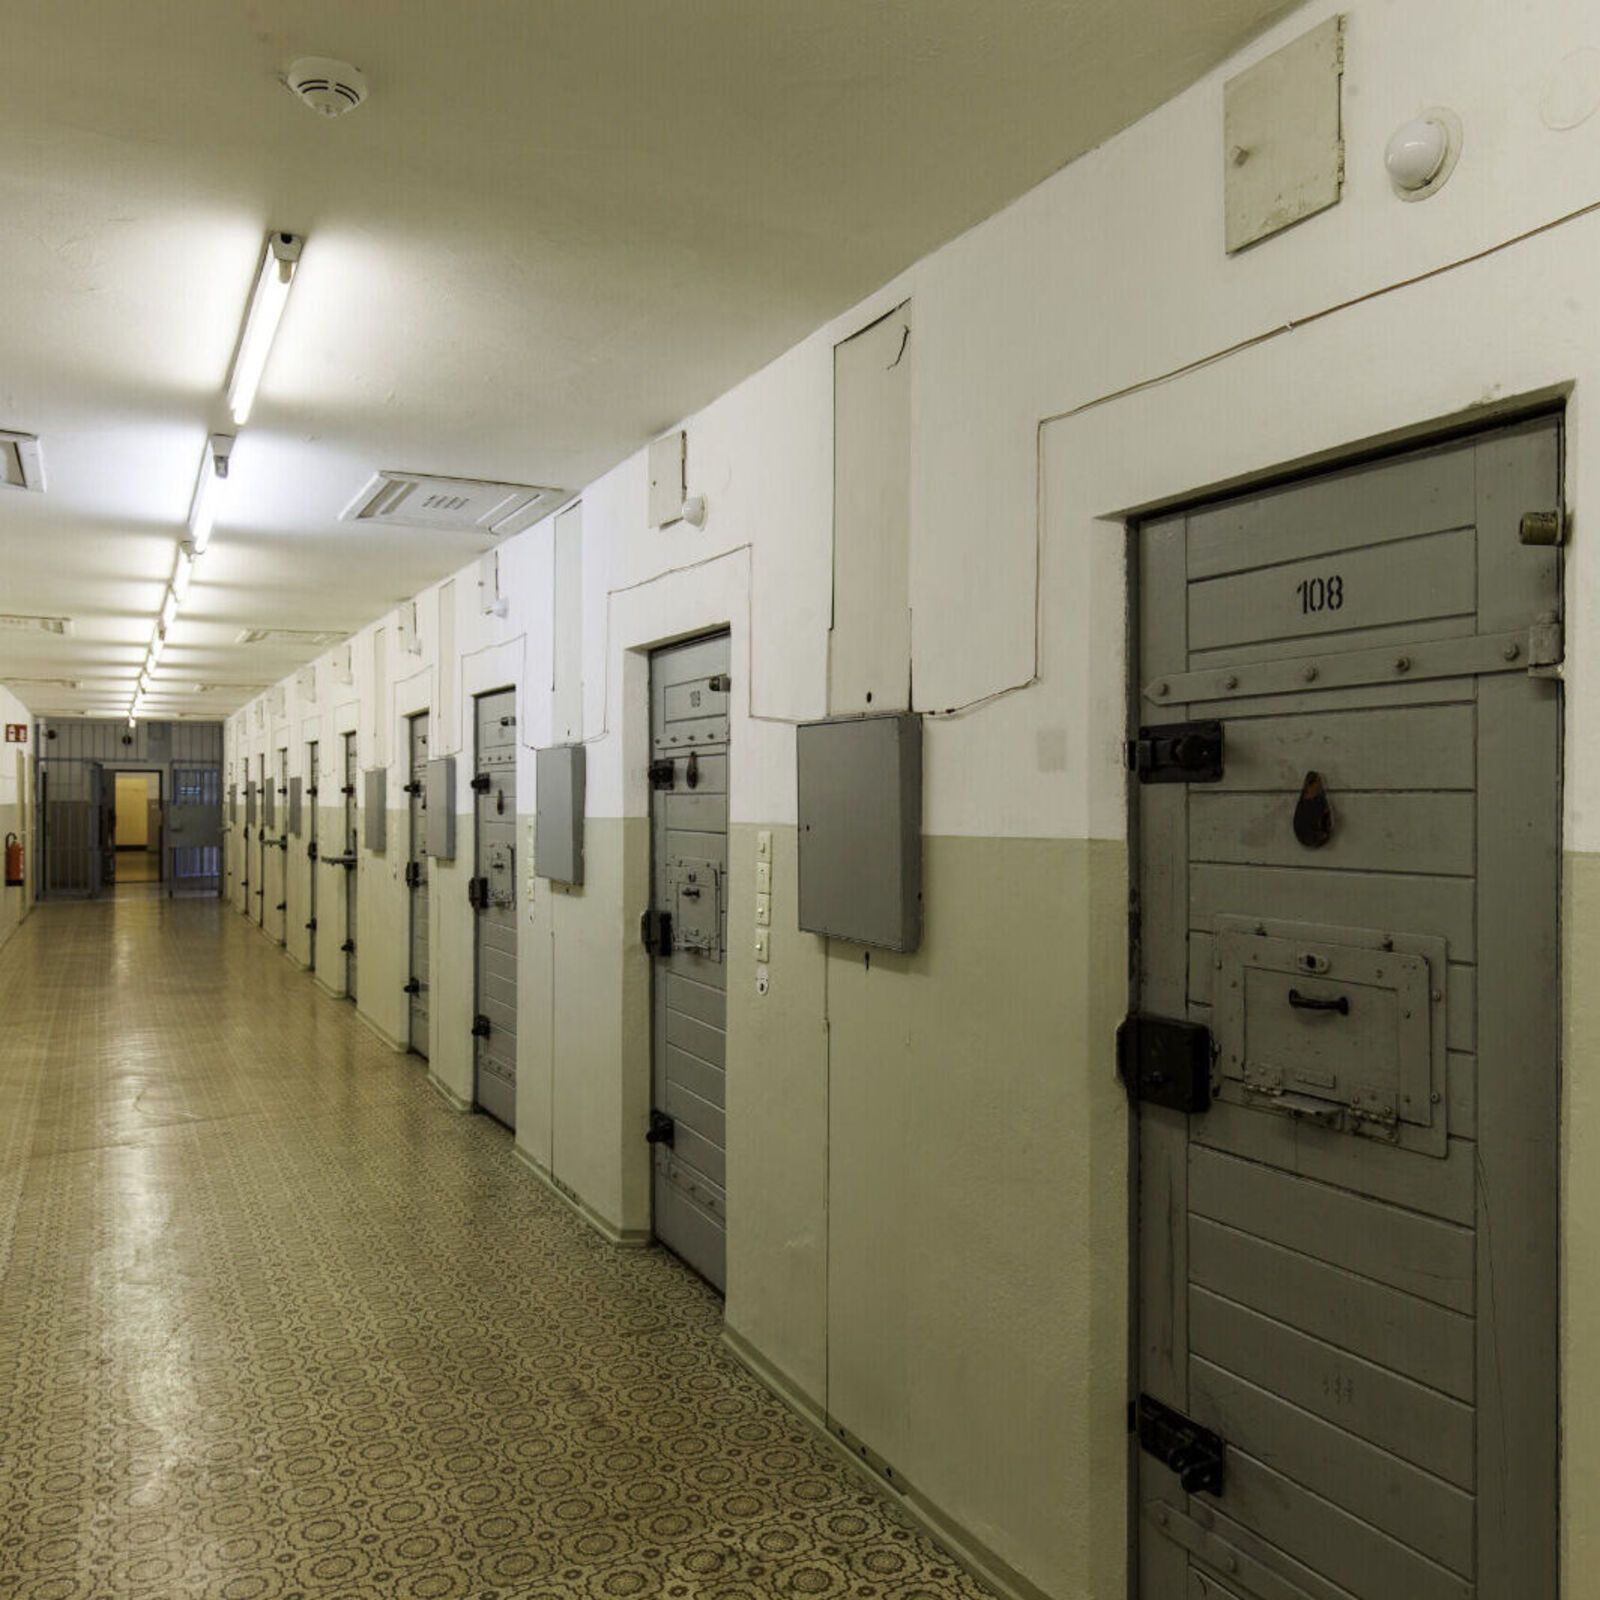 Auf drei Etagen befinden sich im Gefängnisneubau über 100 Zellen, die meisten davon waren Einzelzellen.